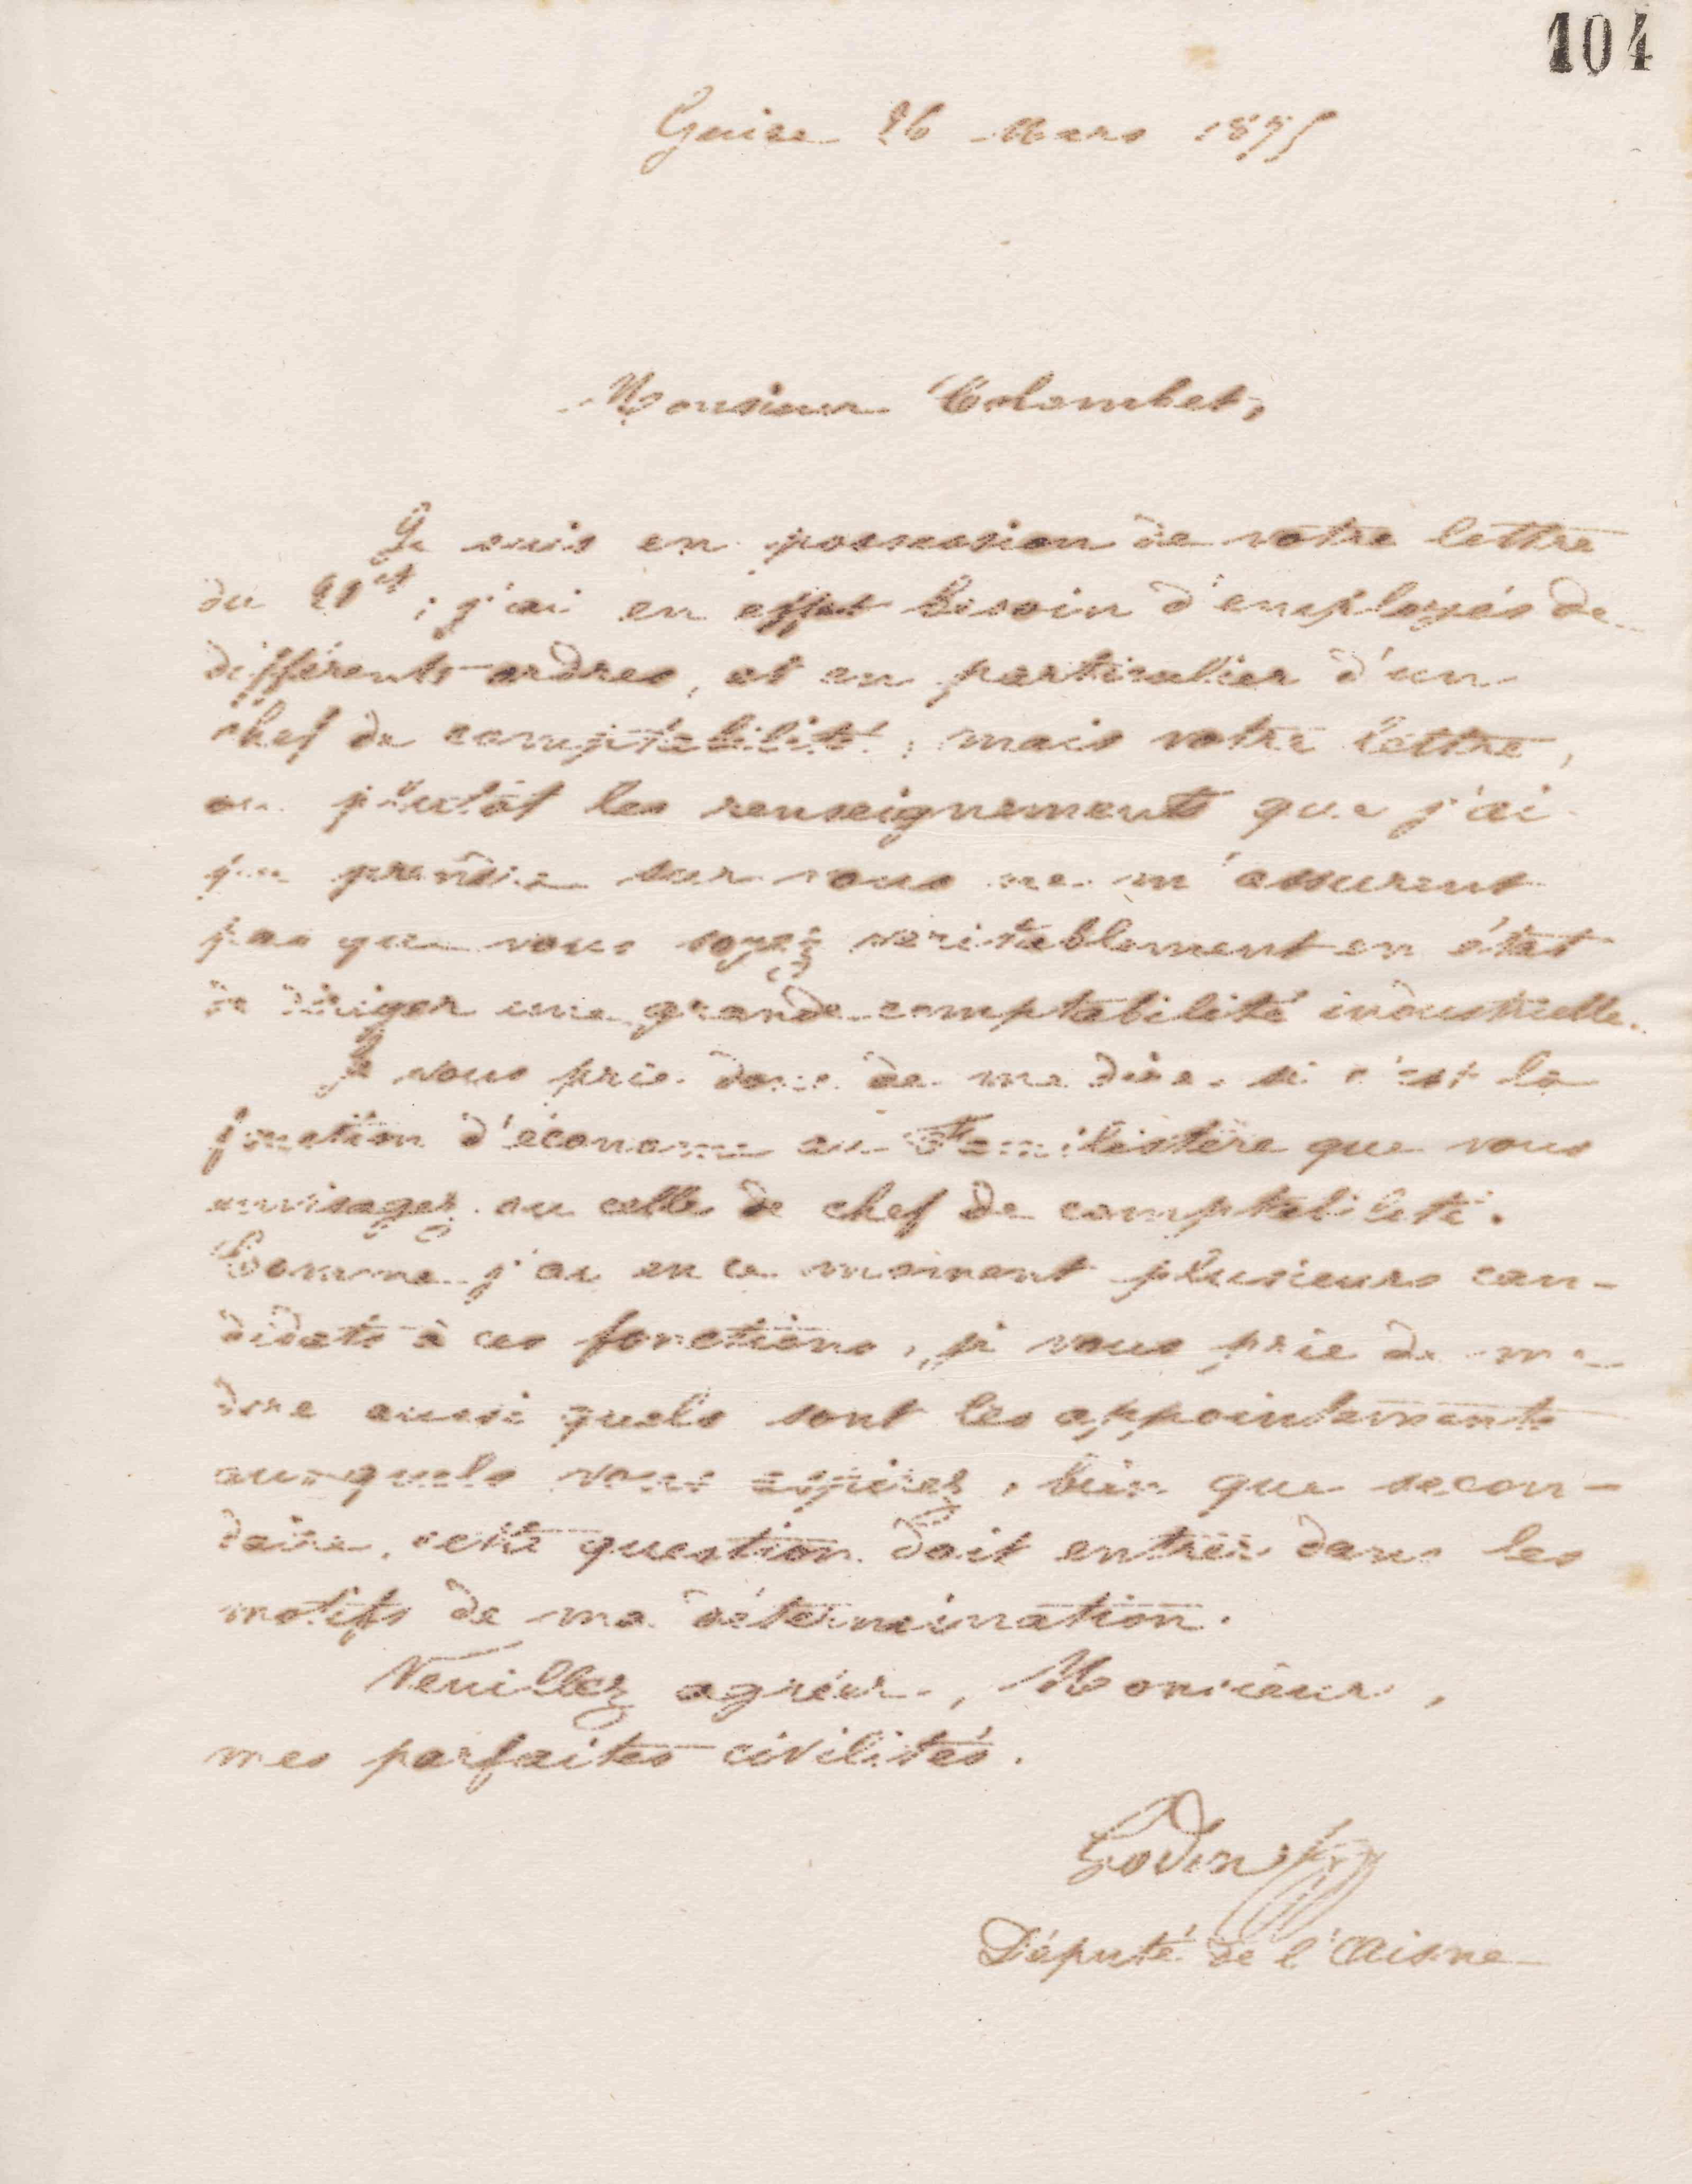 Jean-Baptiste André Godin à monsieur Colombet, 26 mars 1875